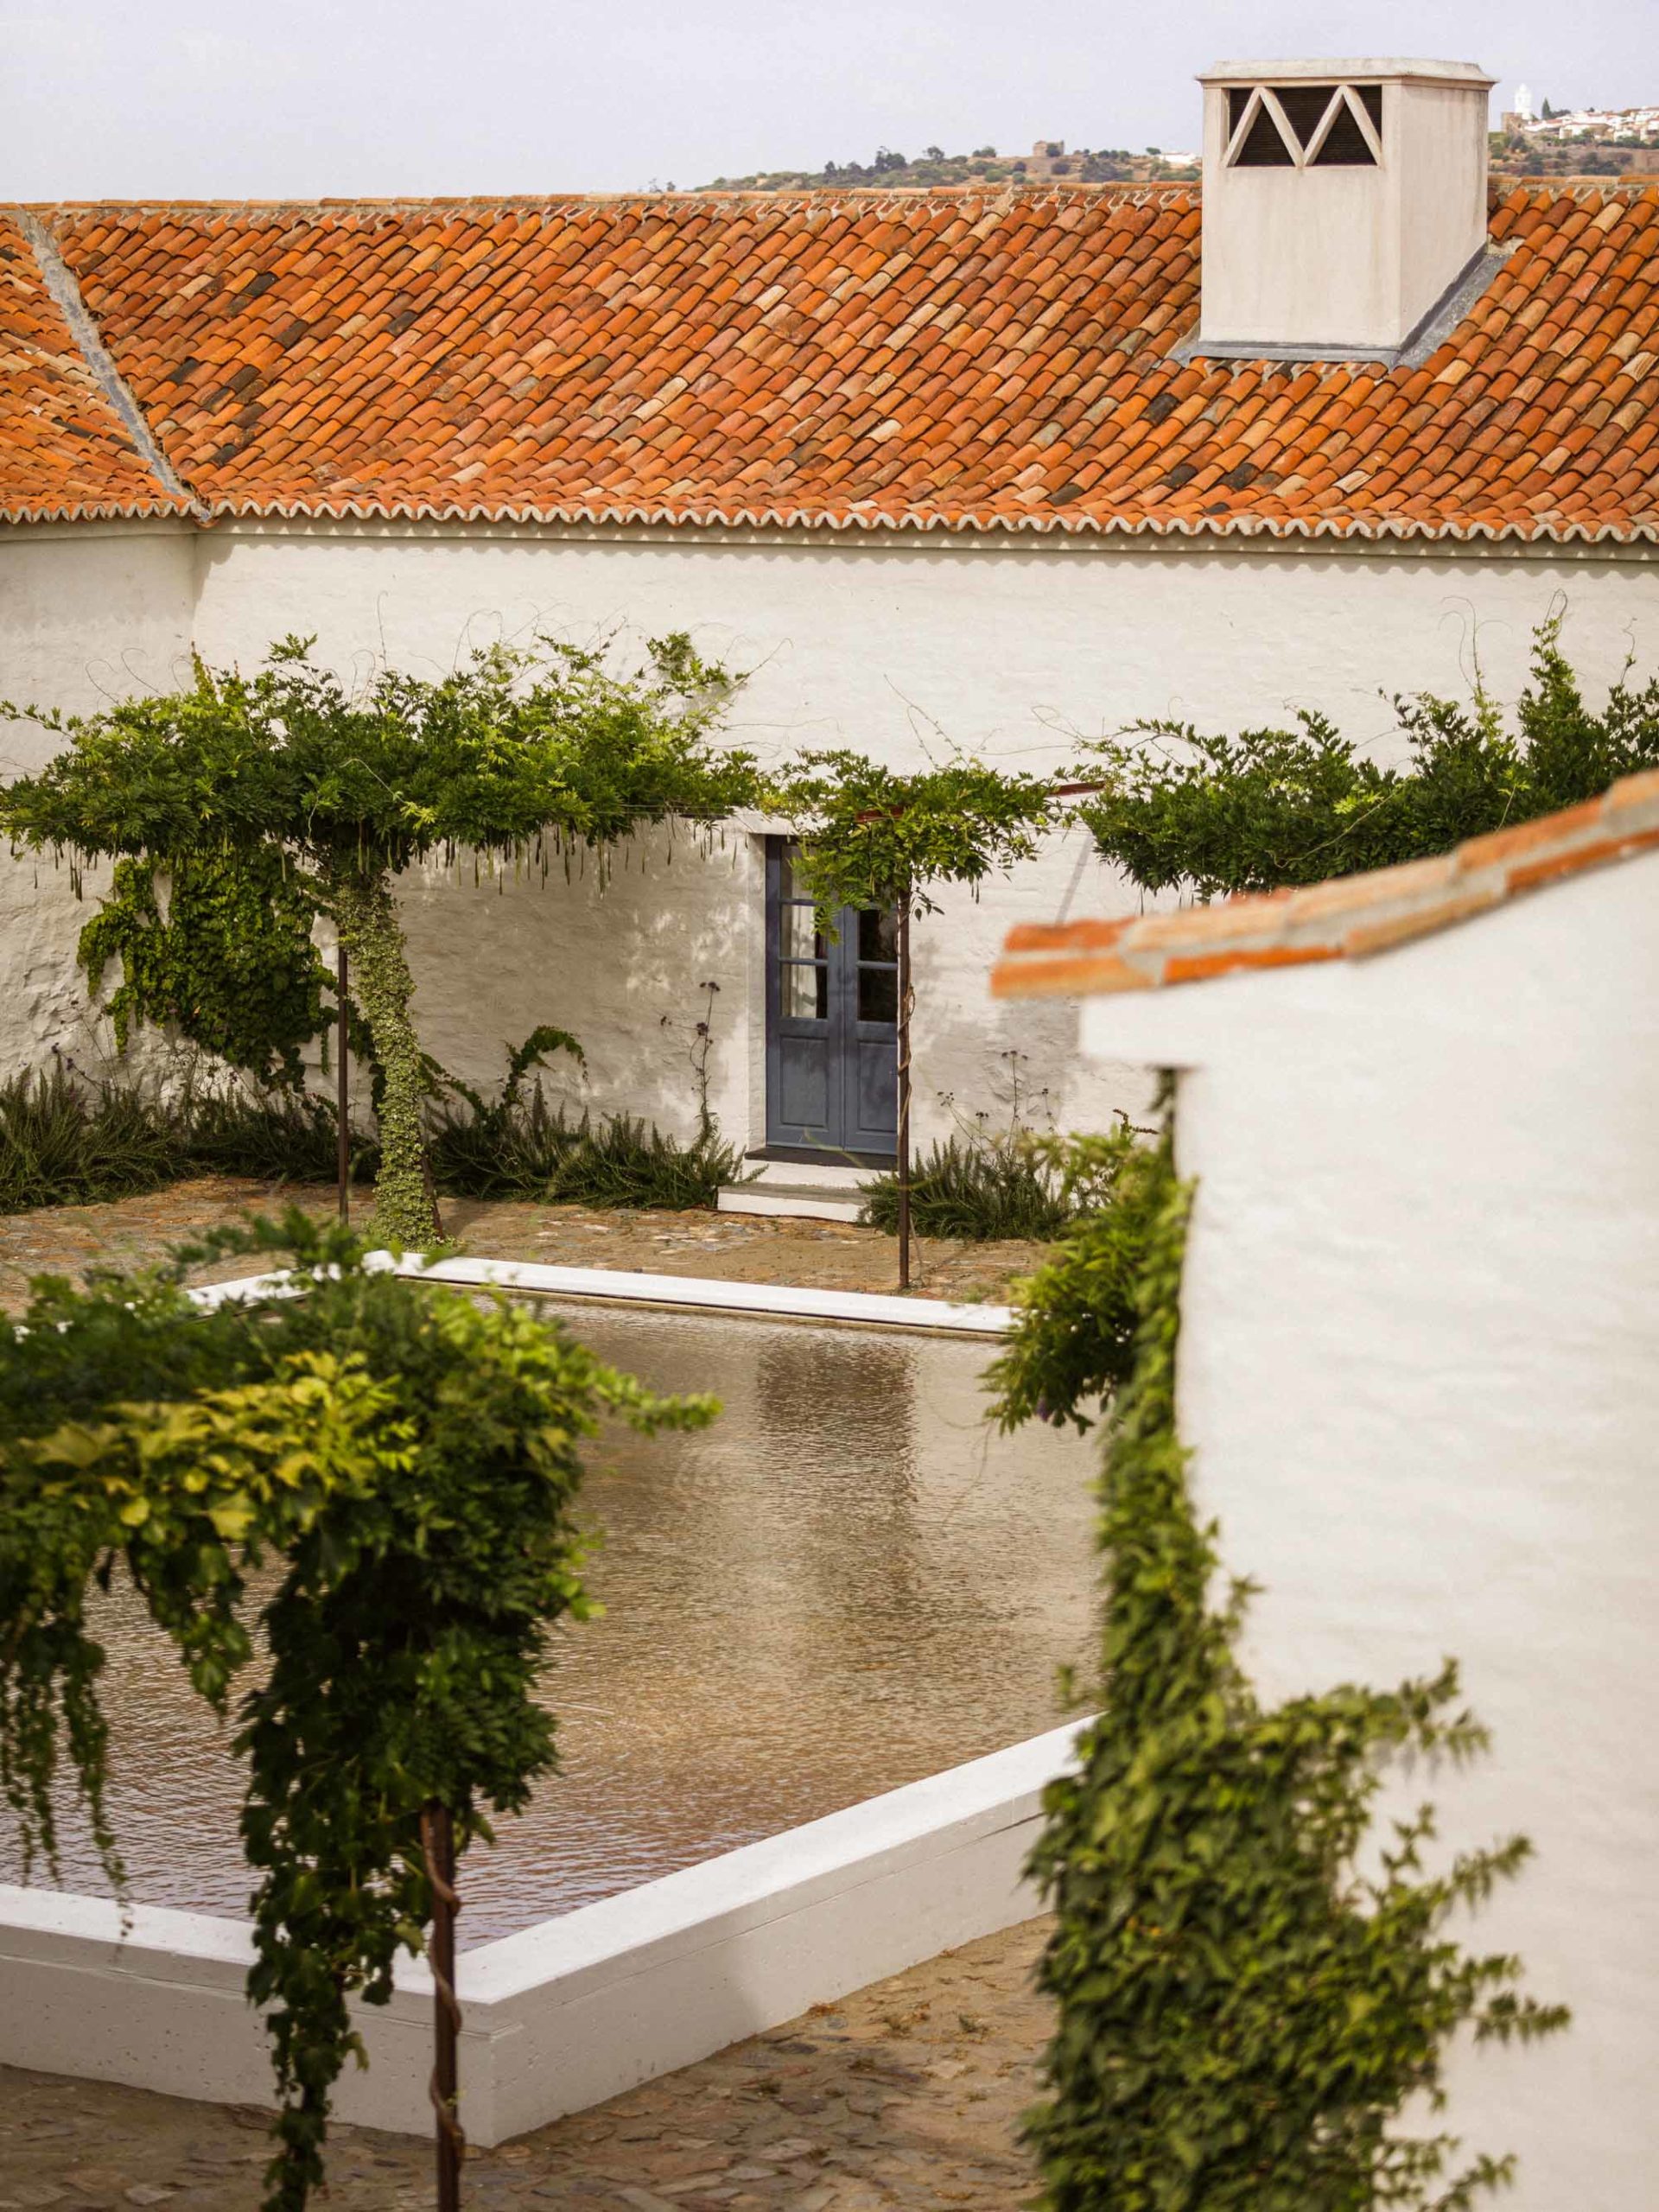 An intimate courtyard at São Lourenço do Barrocal